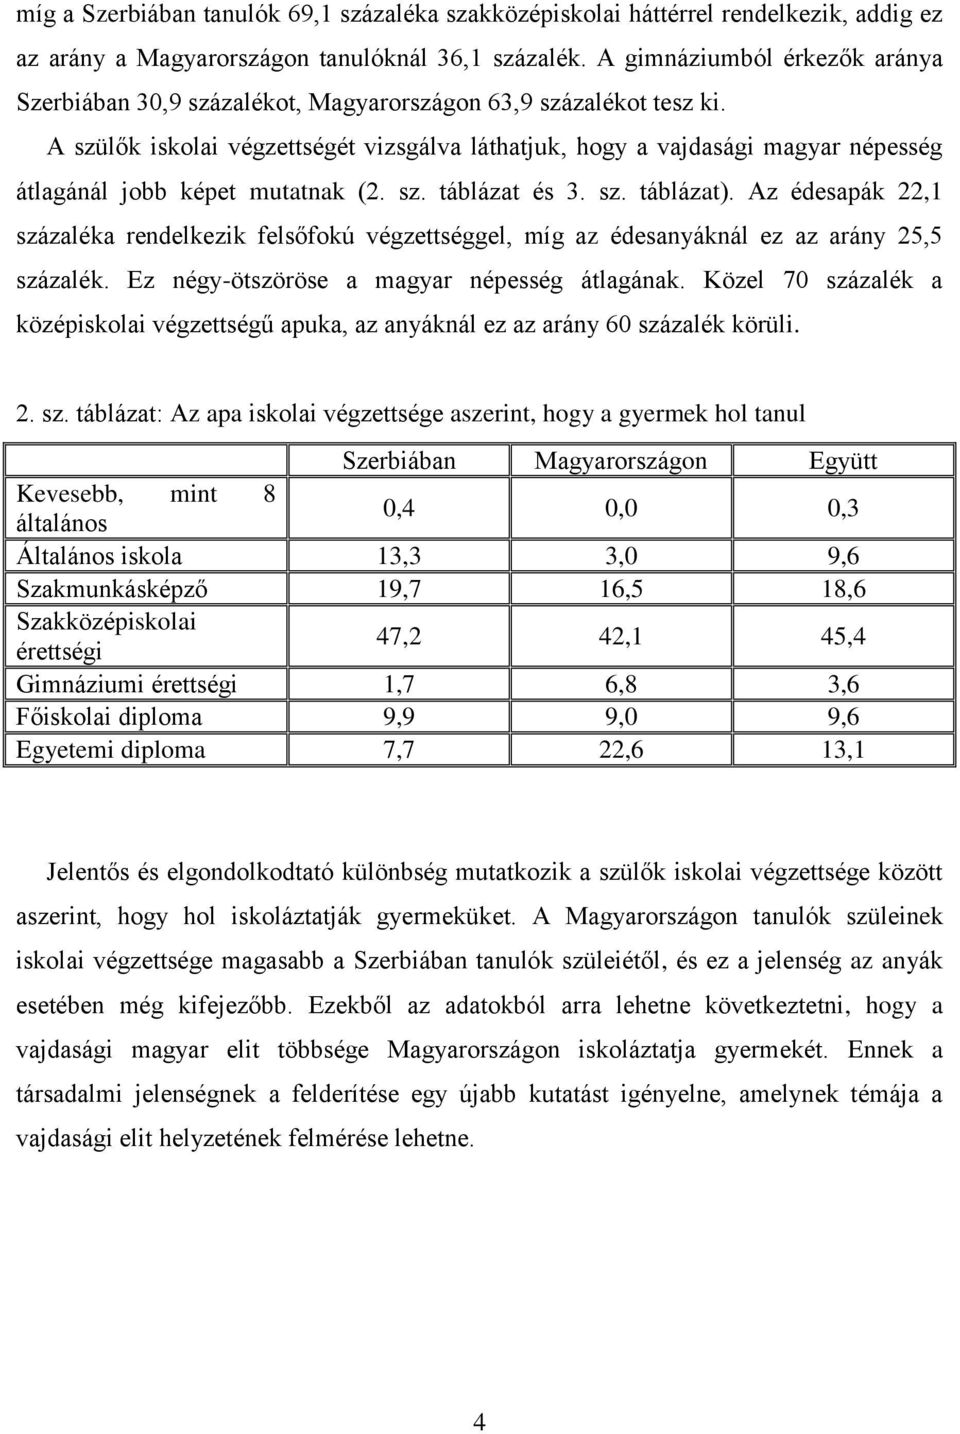 A szülők iskolai végzettségét vizsgálva láthatjuk, hogy a vajdasági magyar népesség átlagánál jobb képet mutatnak (2. sz. táblázat és 3. sz. táblázat).